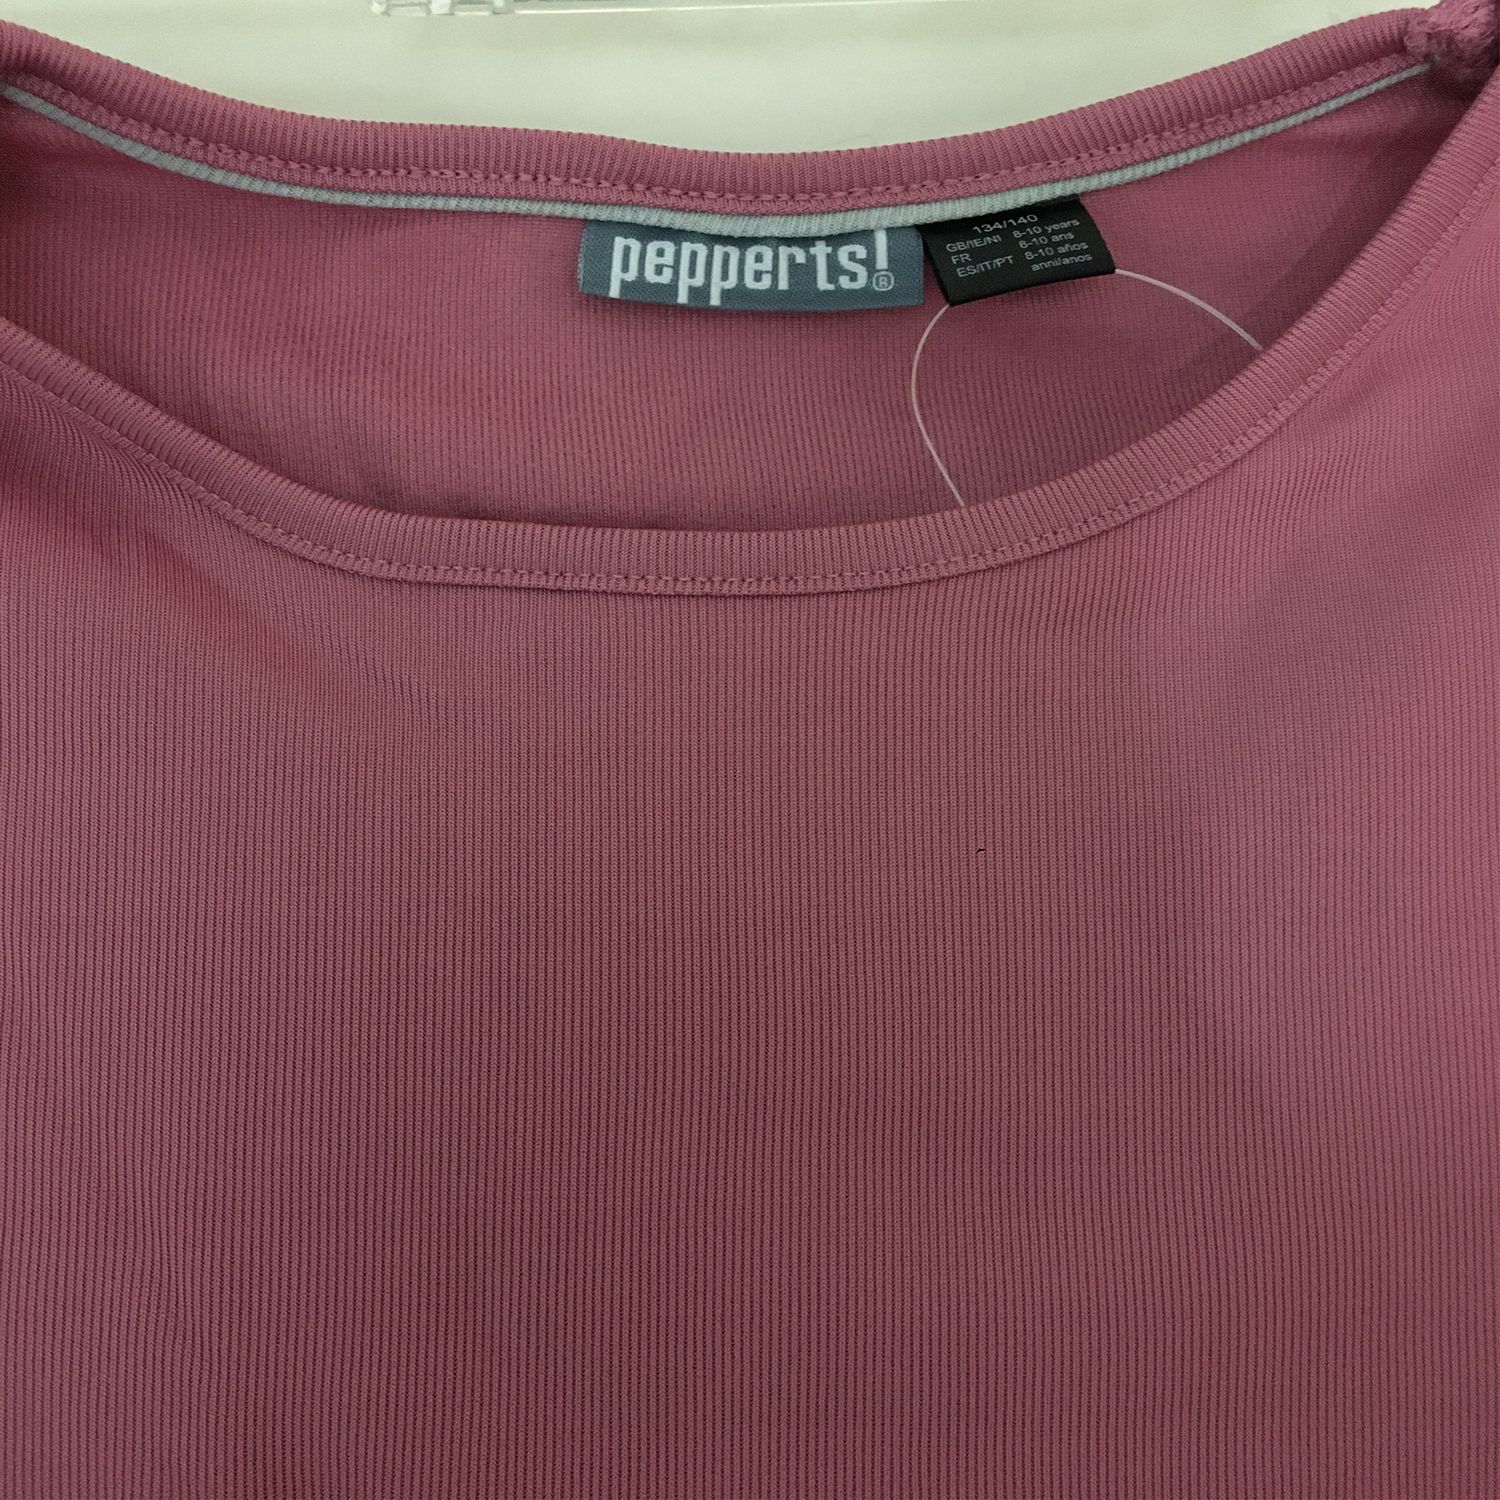 تی شرت دخترانه پیپرتس کد lp 327505 -  - 2